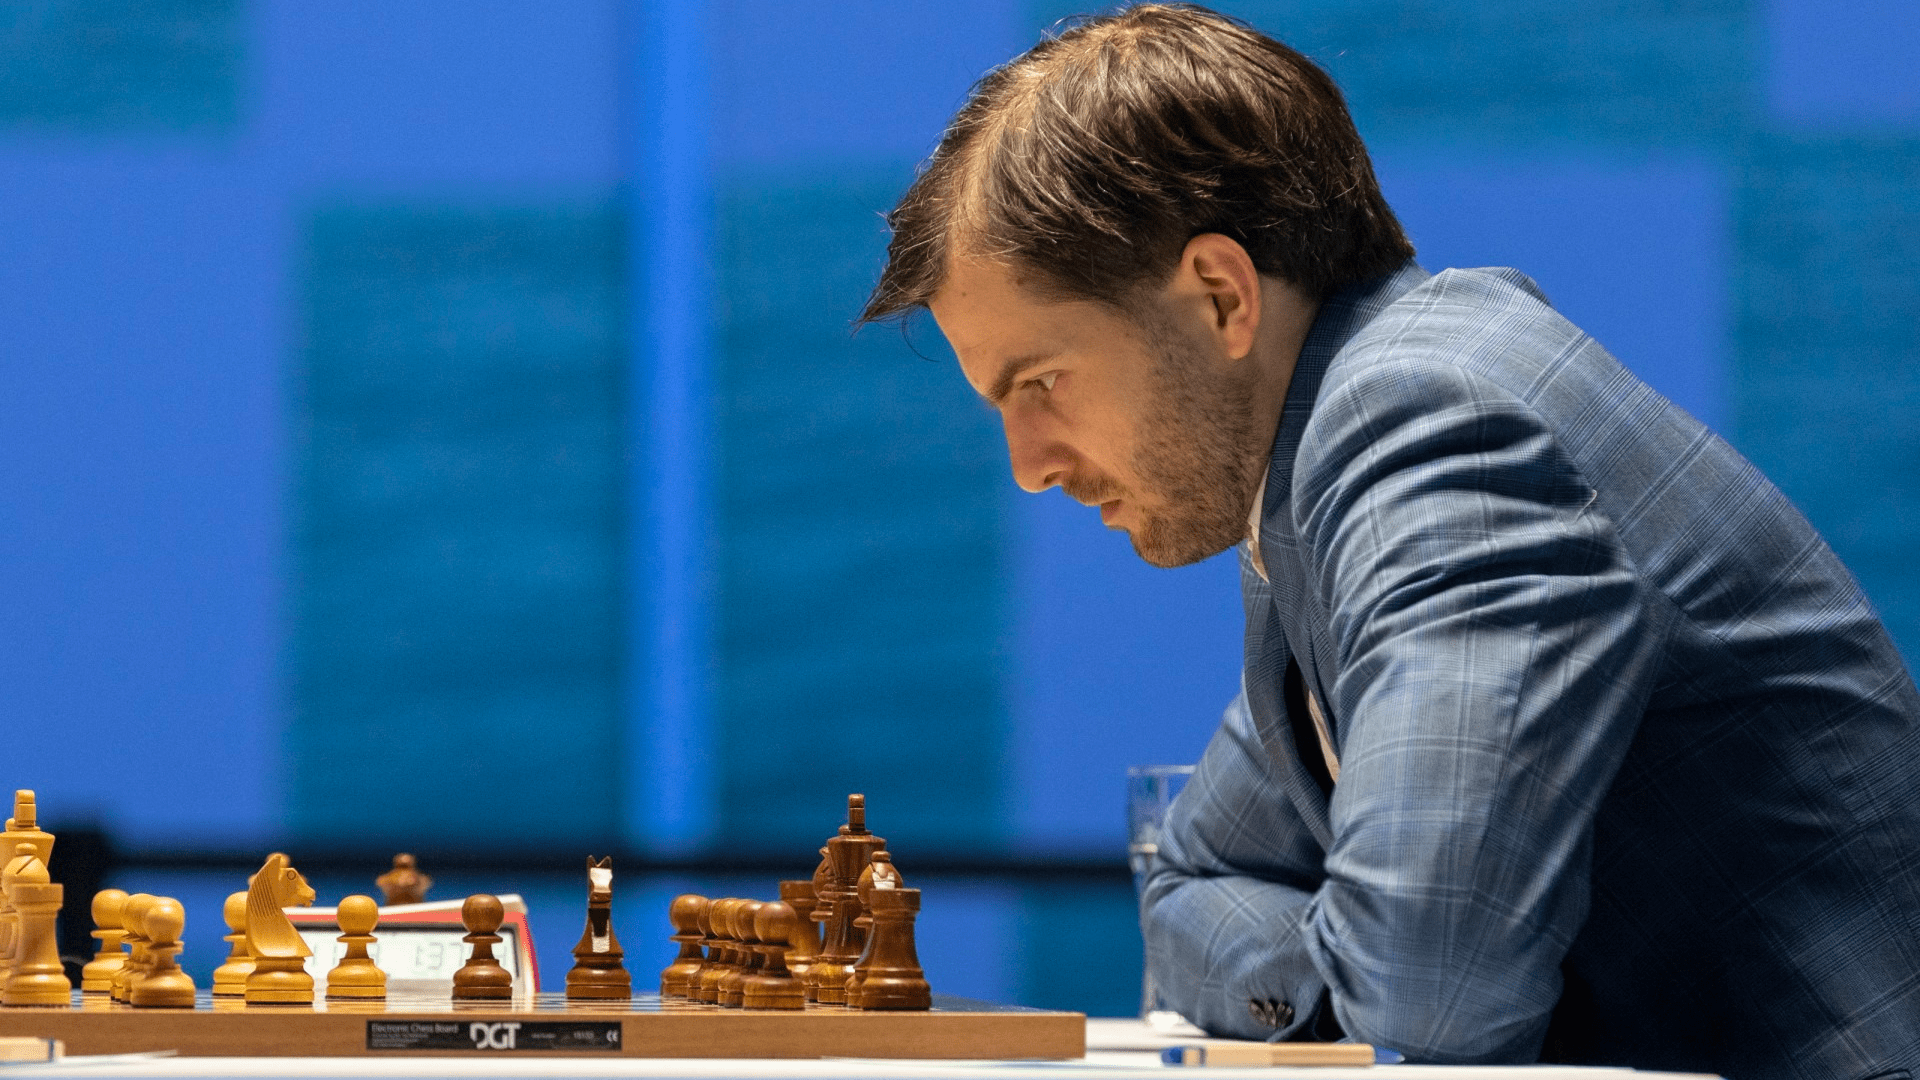 Tata Steel Chess 2020: Round 13